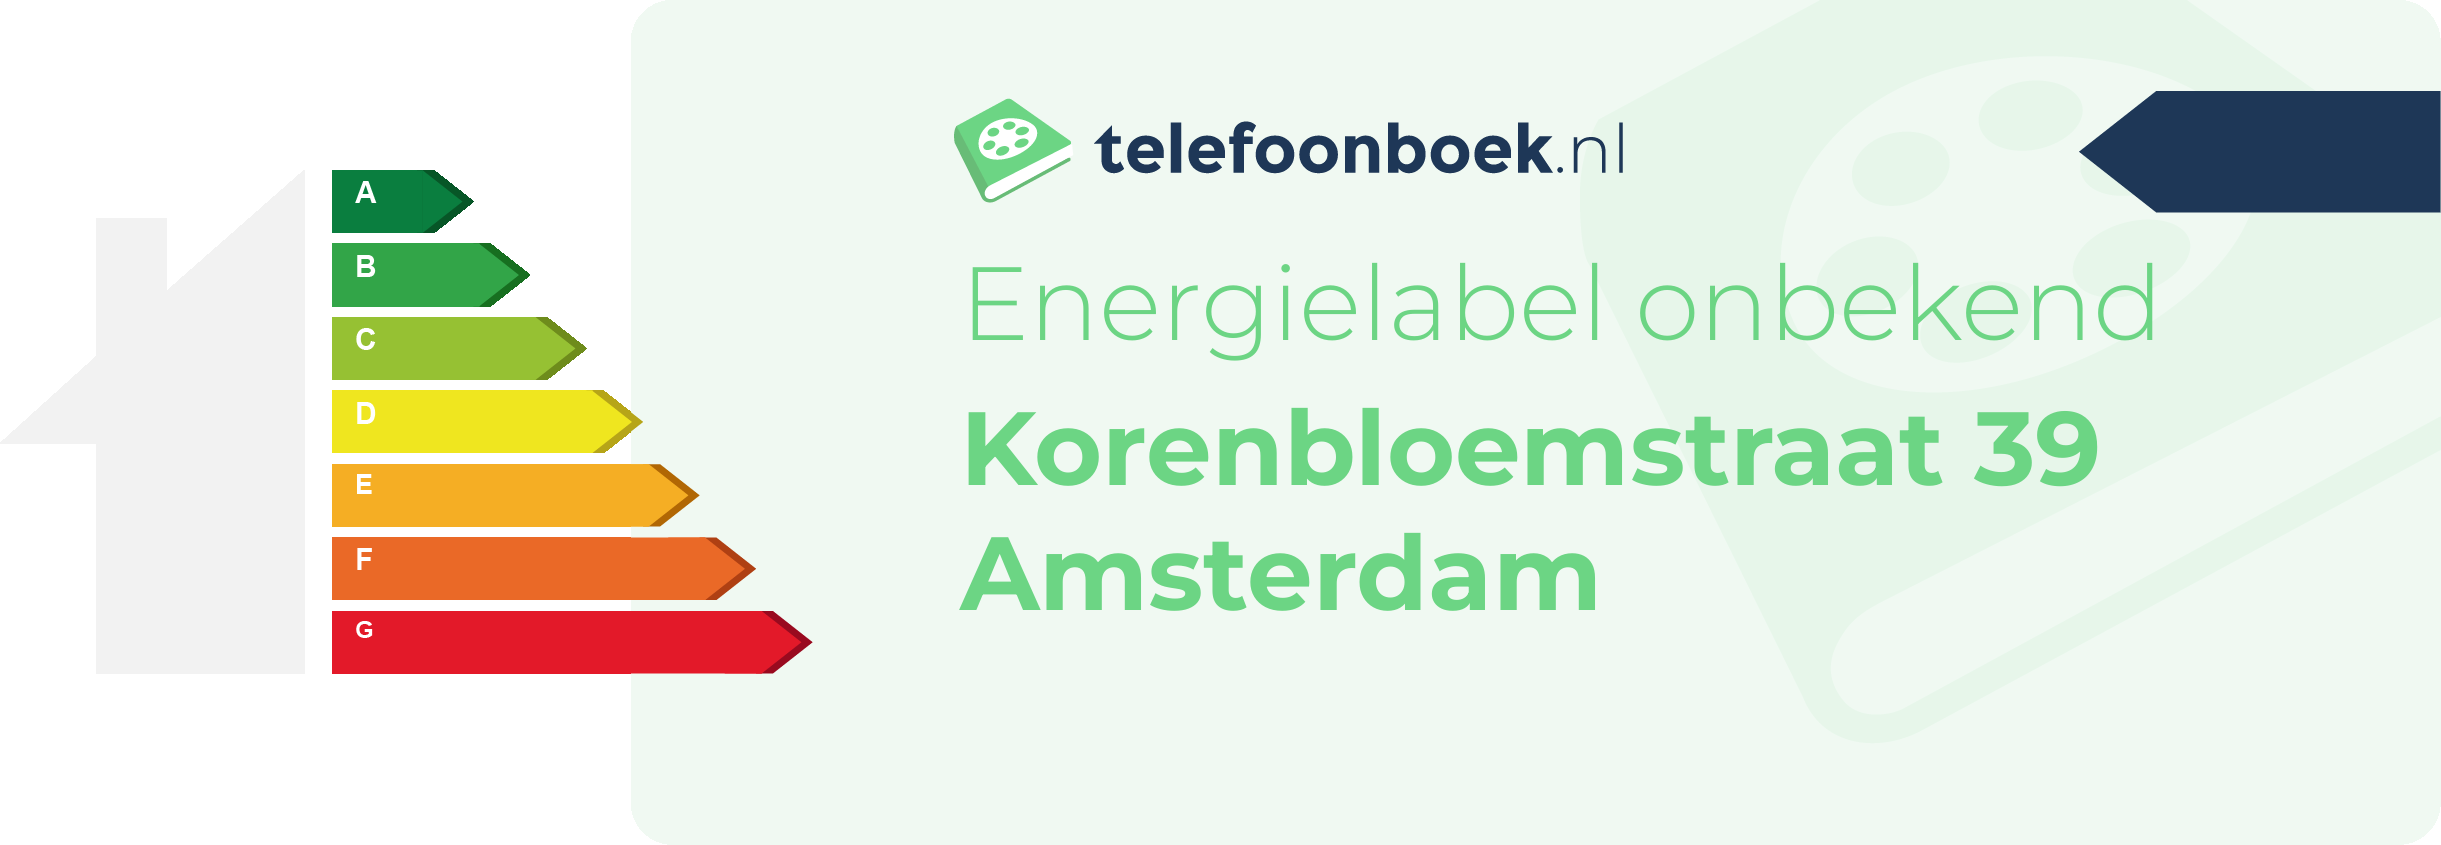 Energielabel Korenbloemstraat 39 Amsterdam